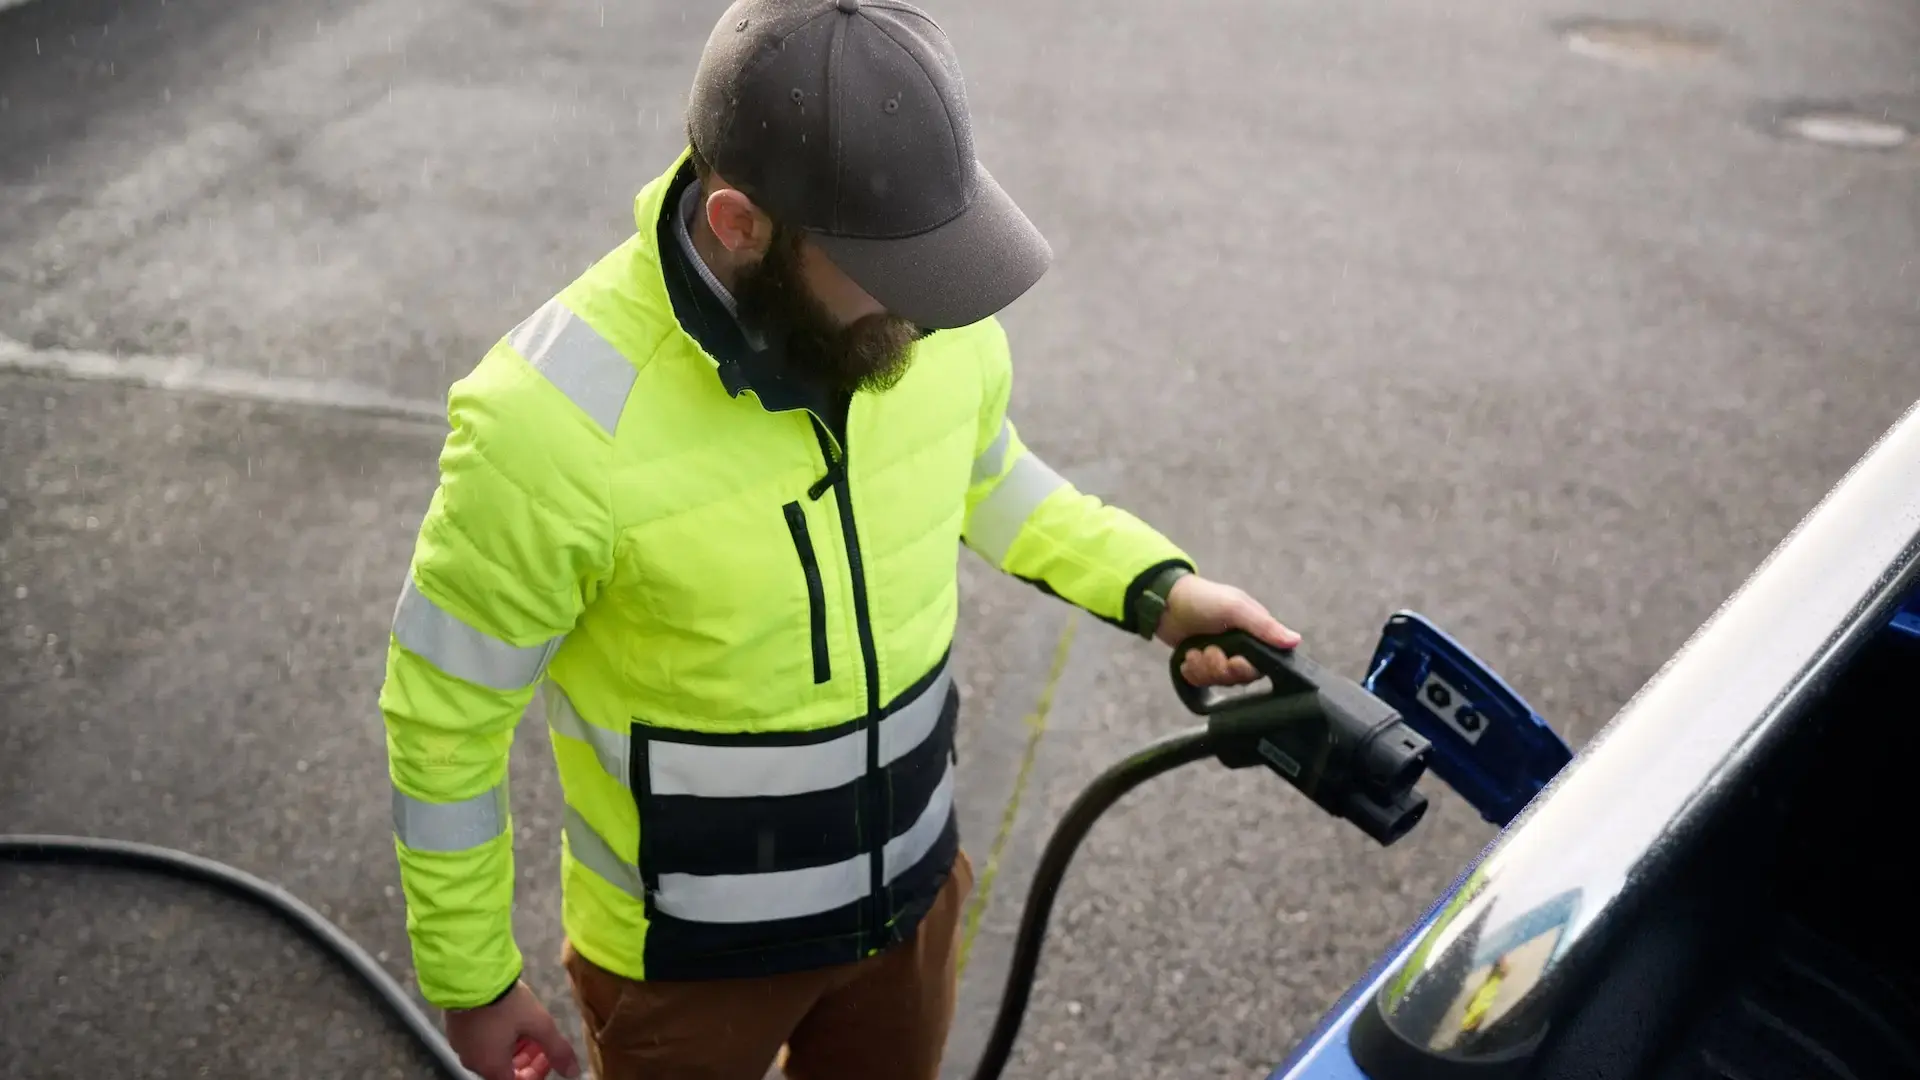 Mann mit gelber Weste hält CCS Stecker an elektrisches Nutzfahrzeug